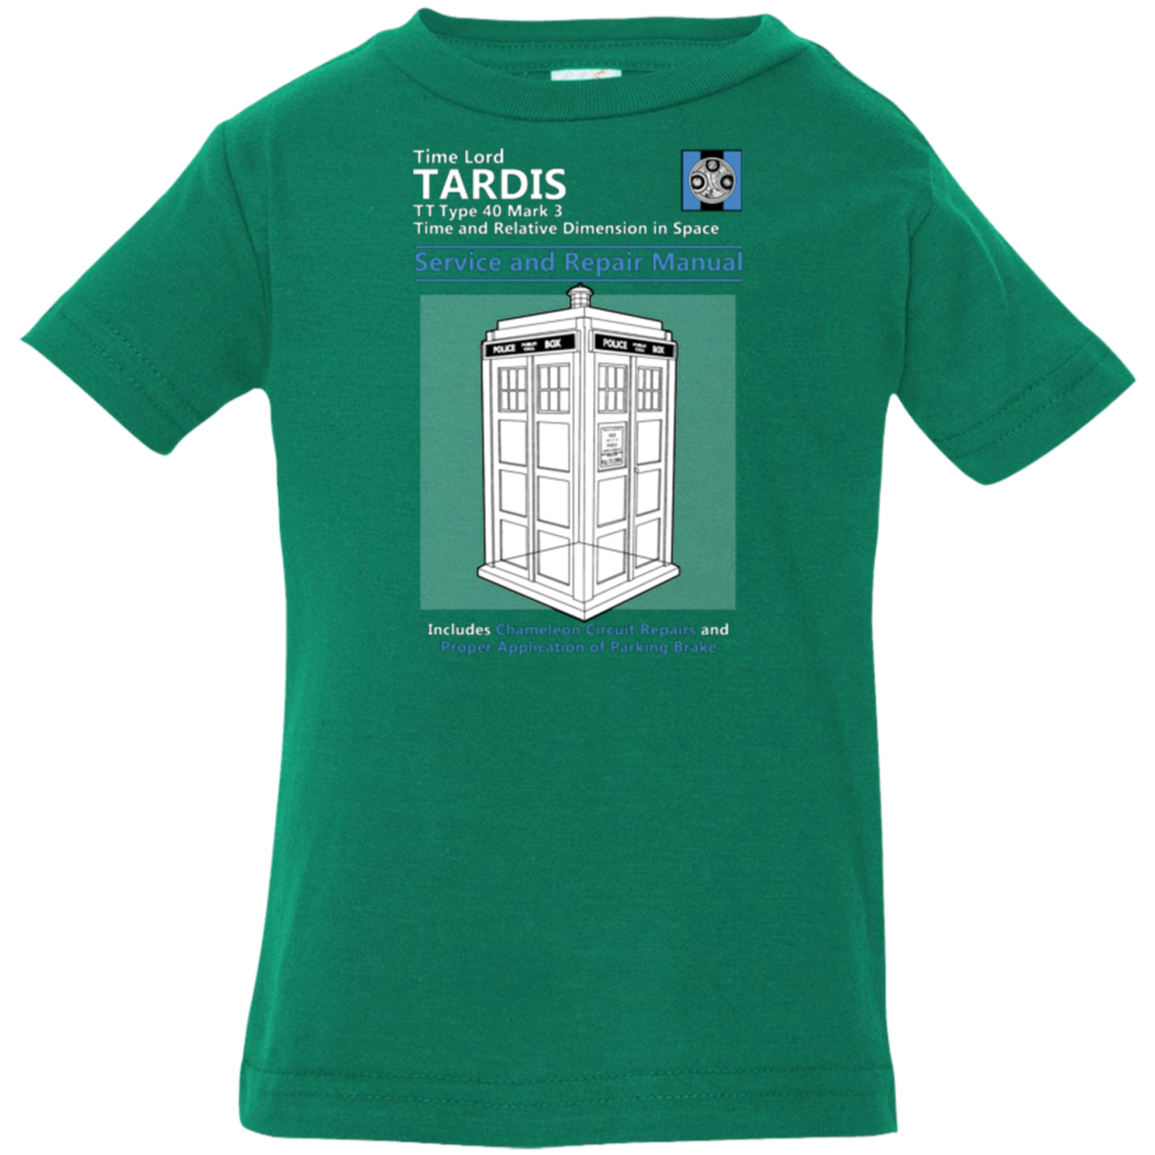 TARDIS SERVICE AND REPAIR MANUAL Infant Premium T-Shirt